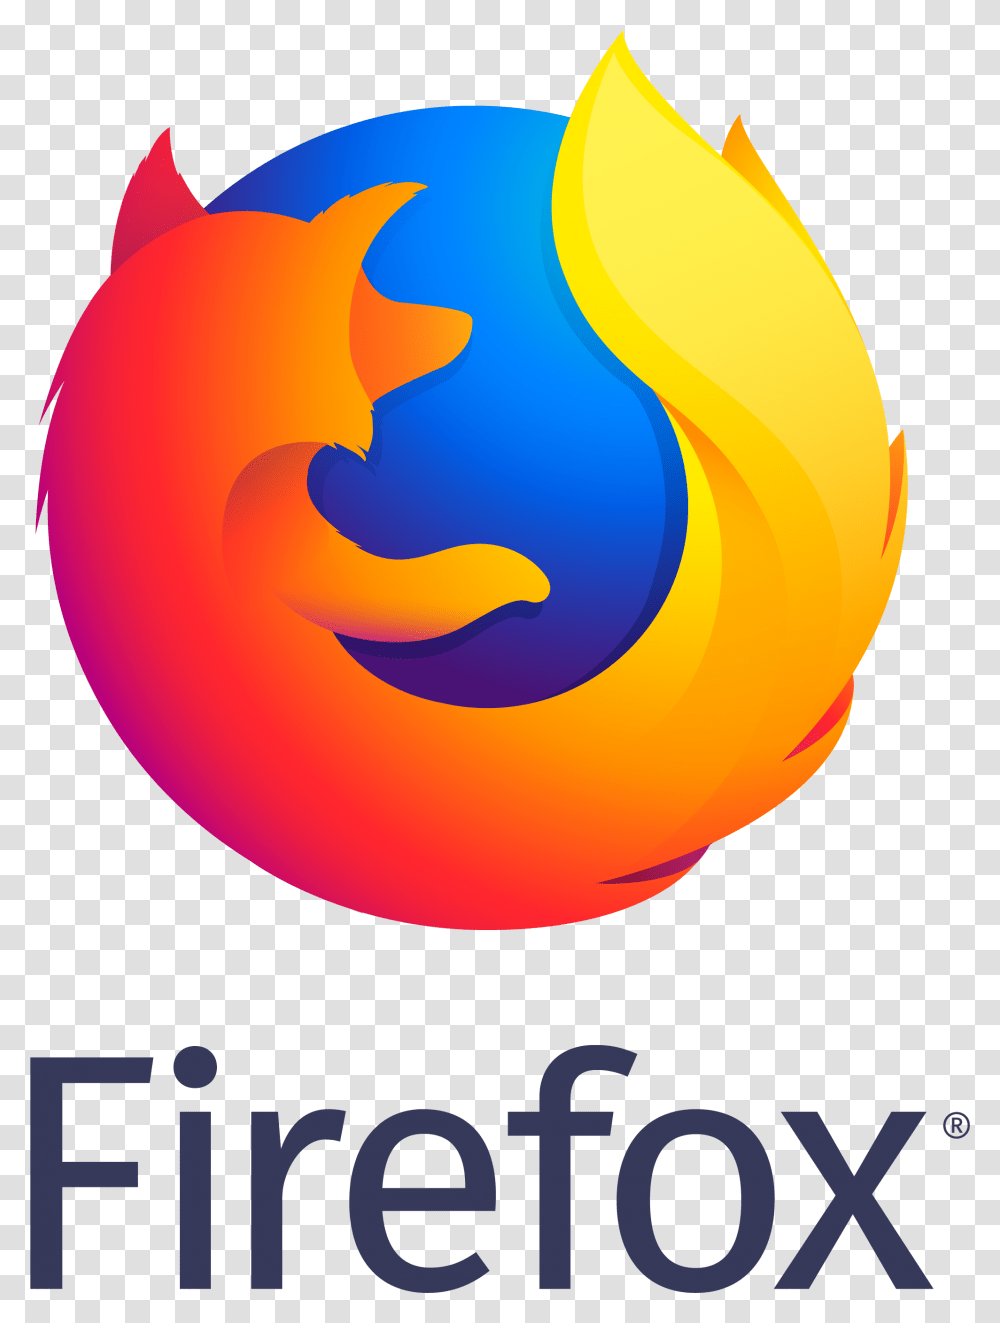 Firefox Logos, Flame Transparent Png